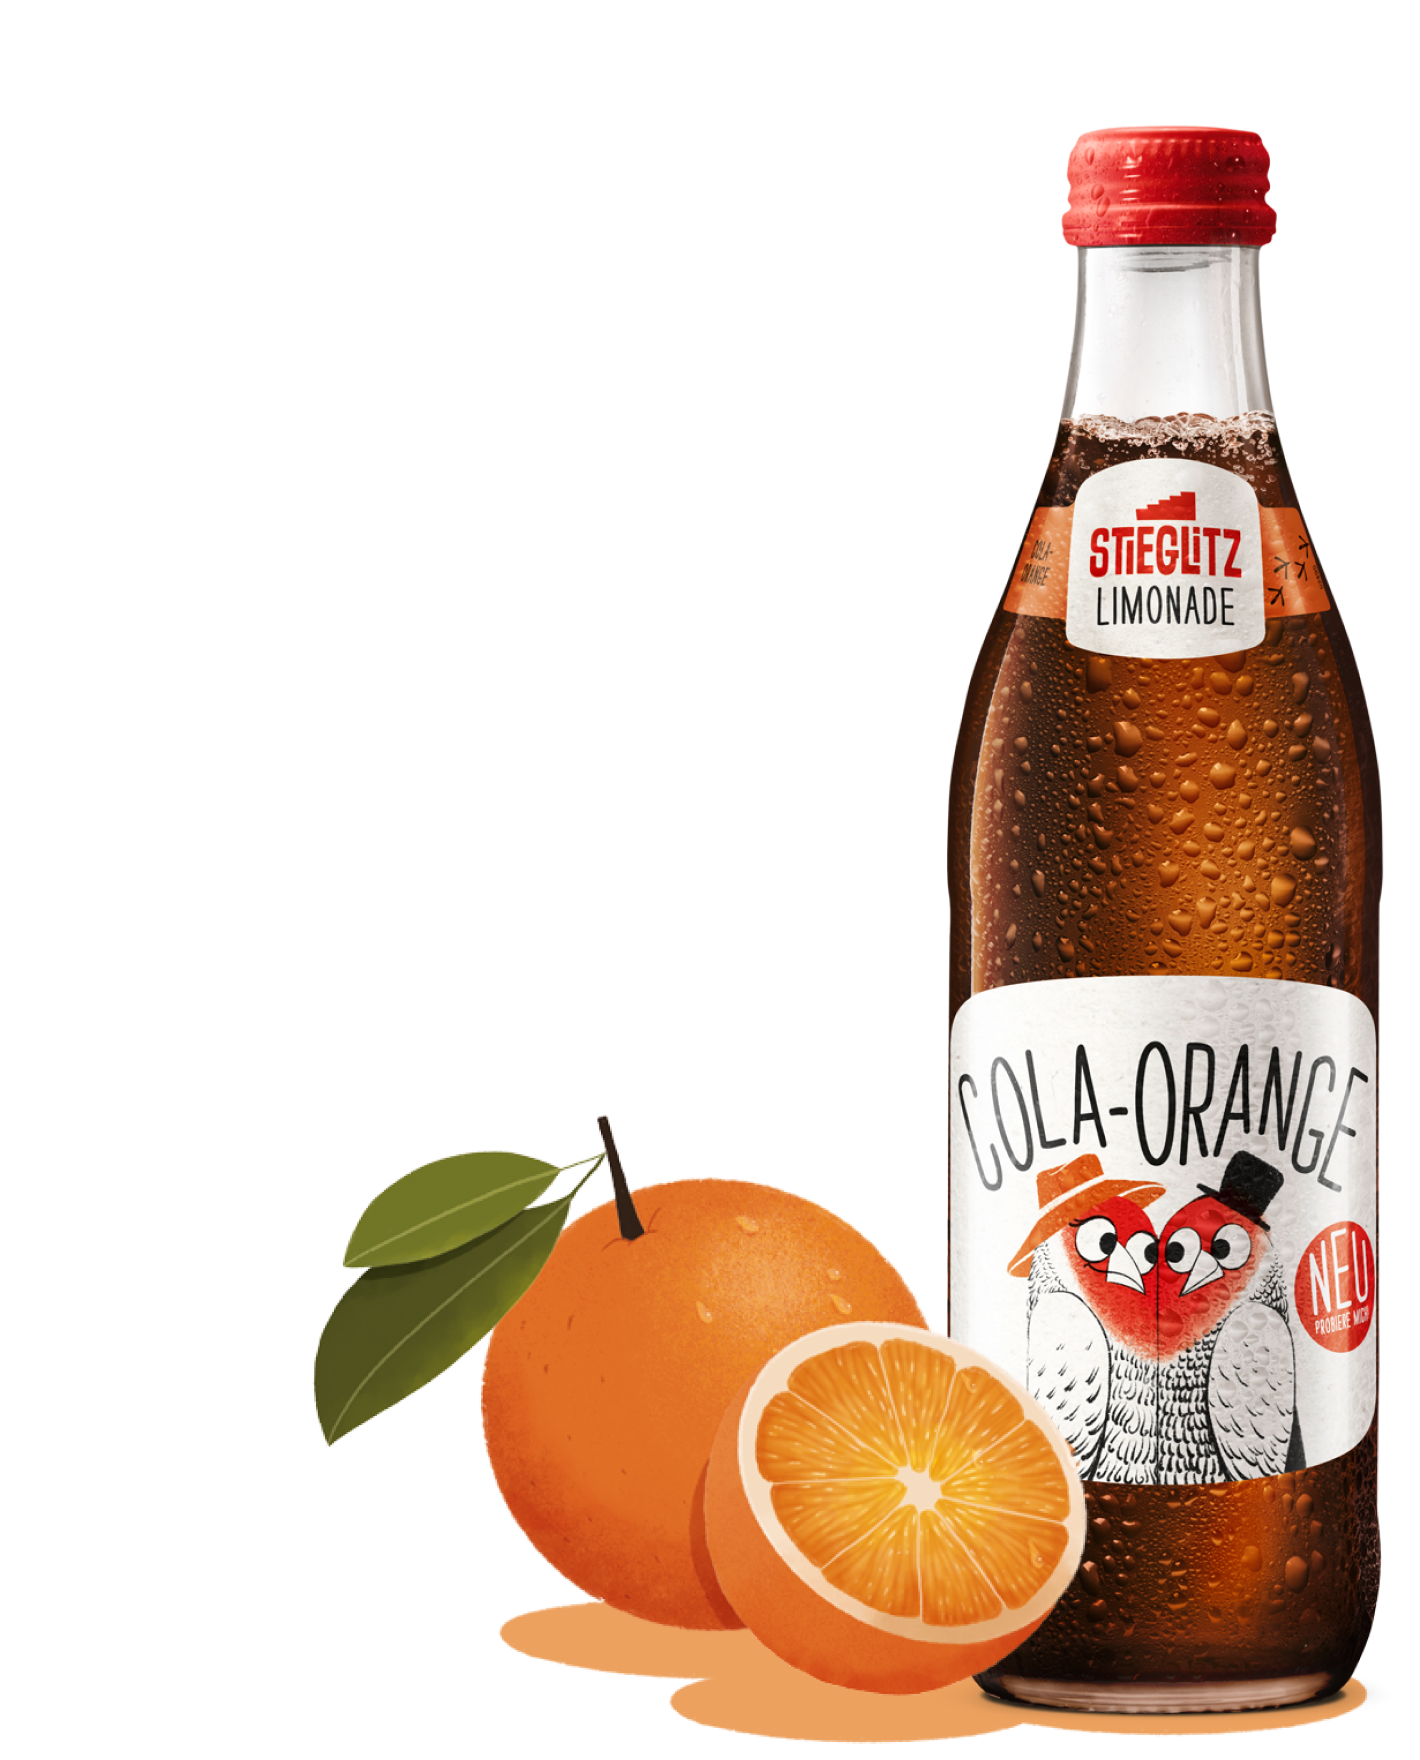 Cola-Orange von Stieglitz